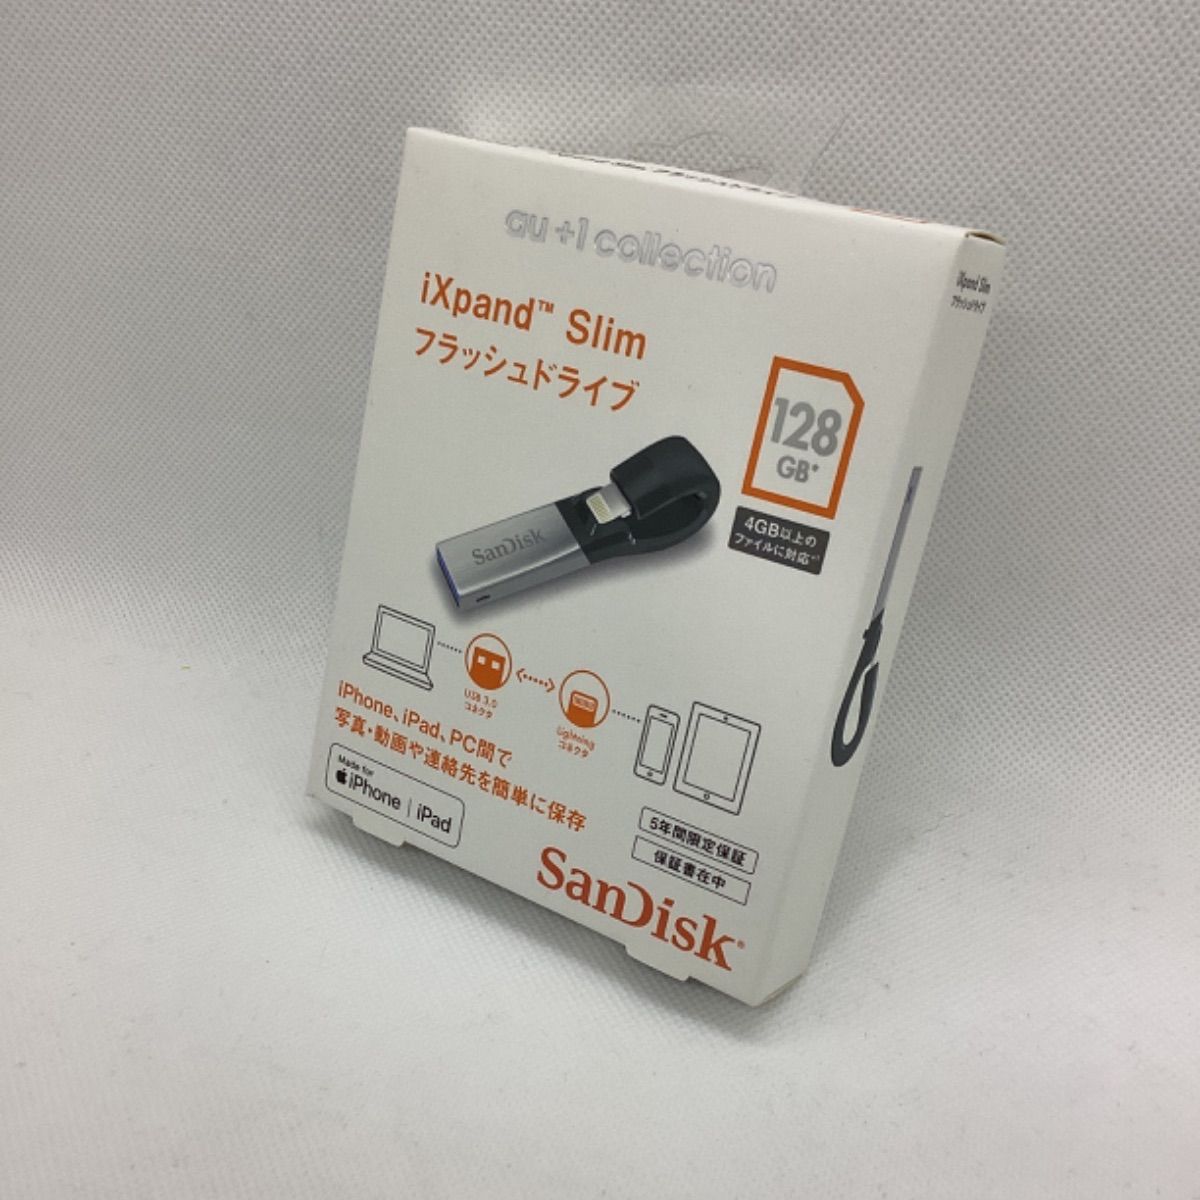 SanDiskSanDisk iXpand Slim フラッシュドライブ 128GB